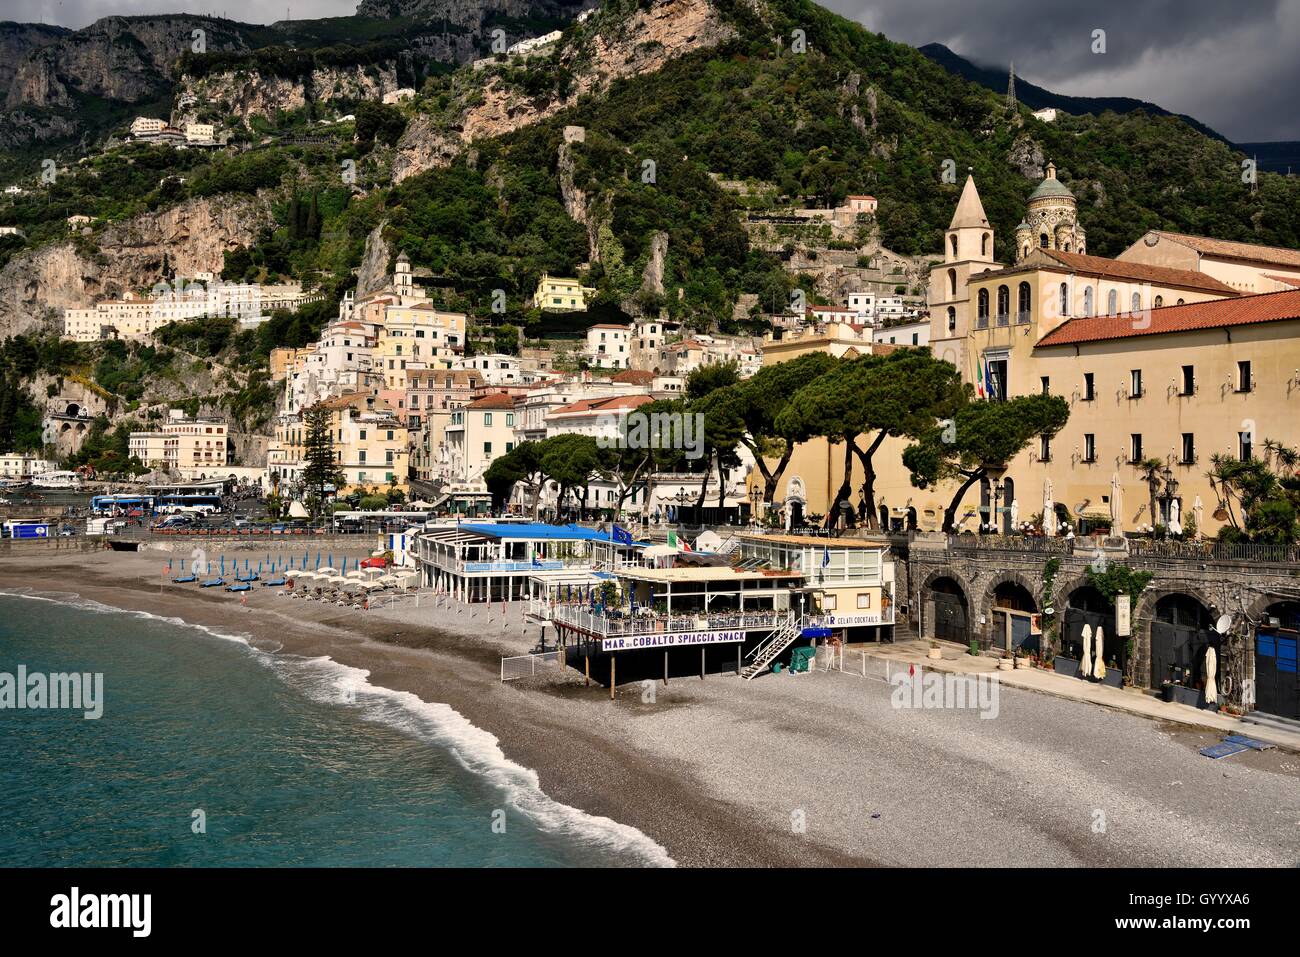 Vista del villaggio, Amalfi Costiera Amalfitana, Costiera Amalfitana, provincia di Salerno, Campania, Italia Foto Stock